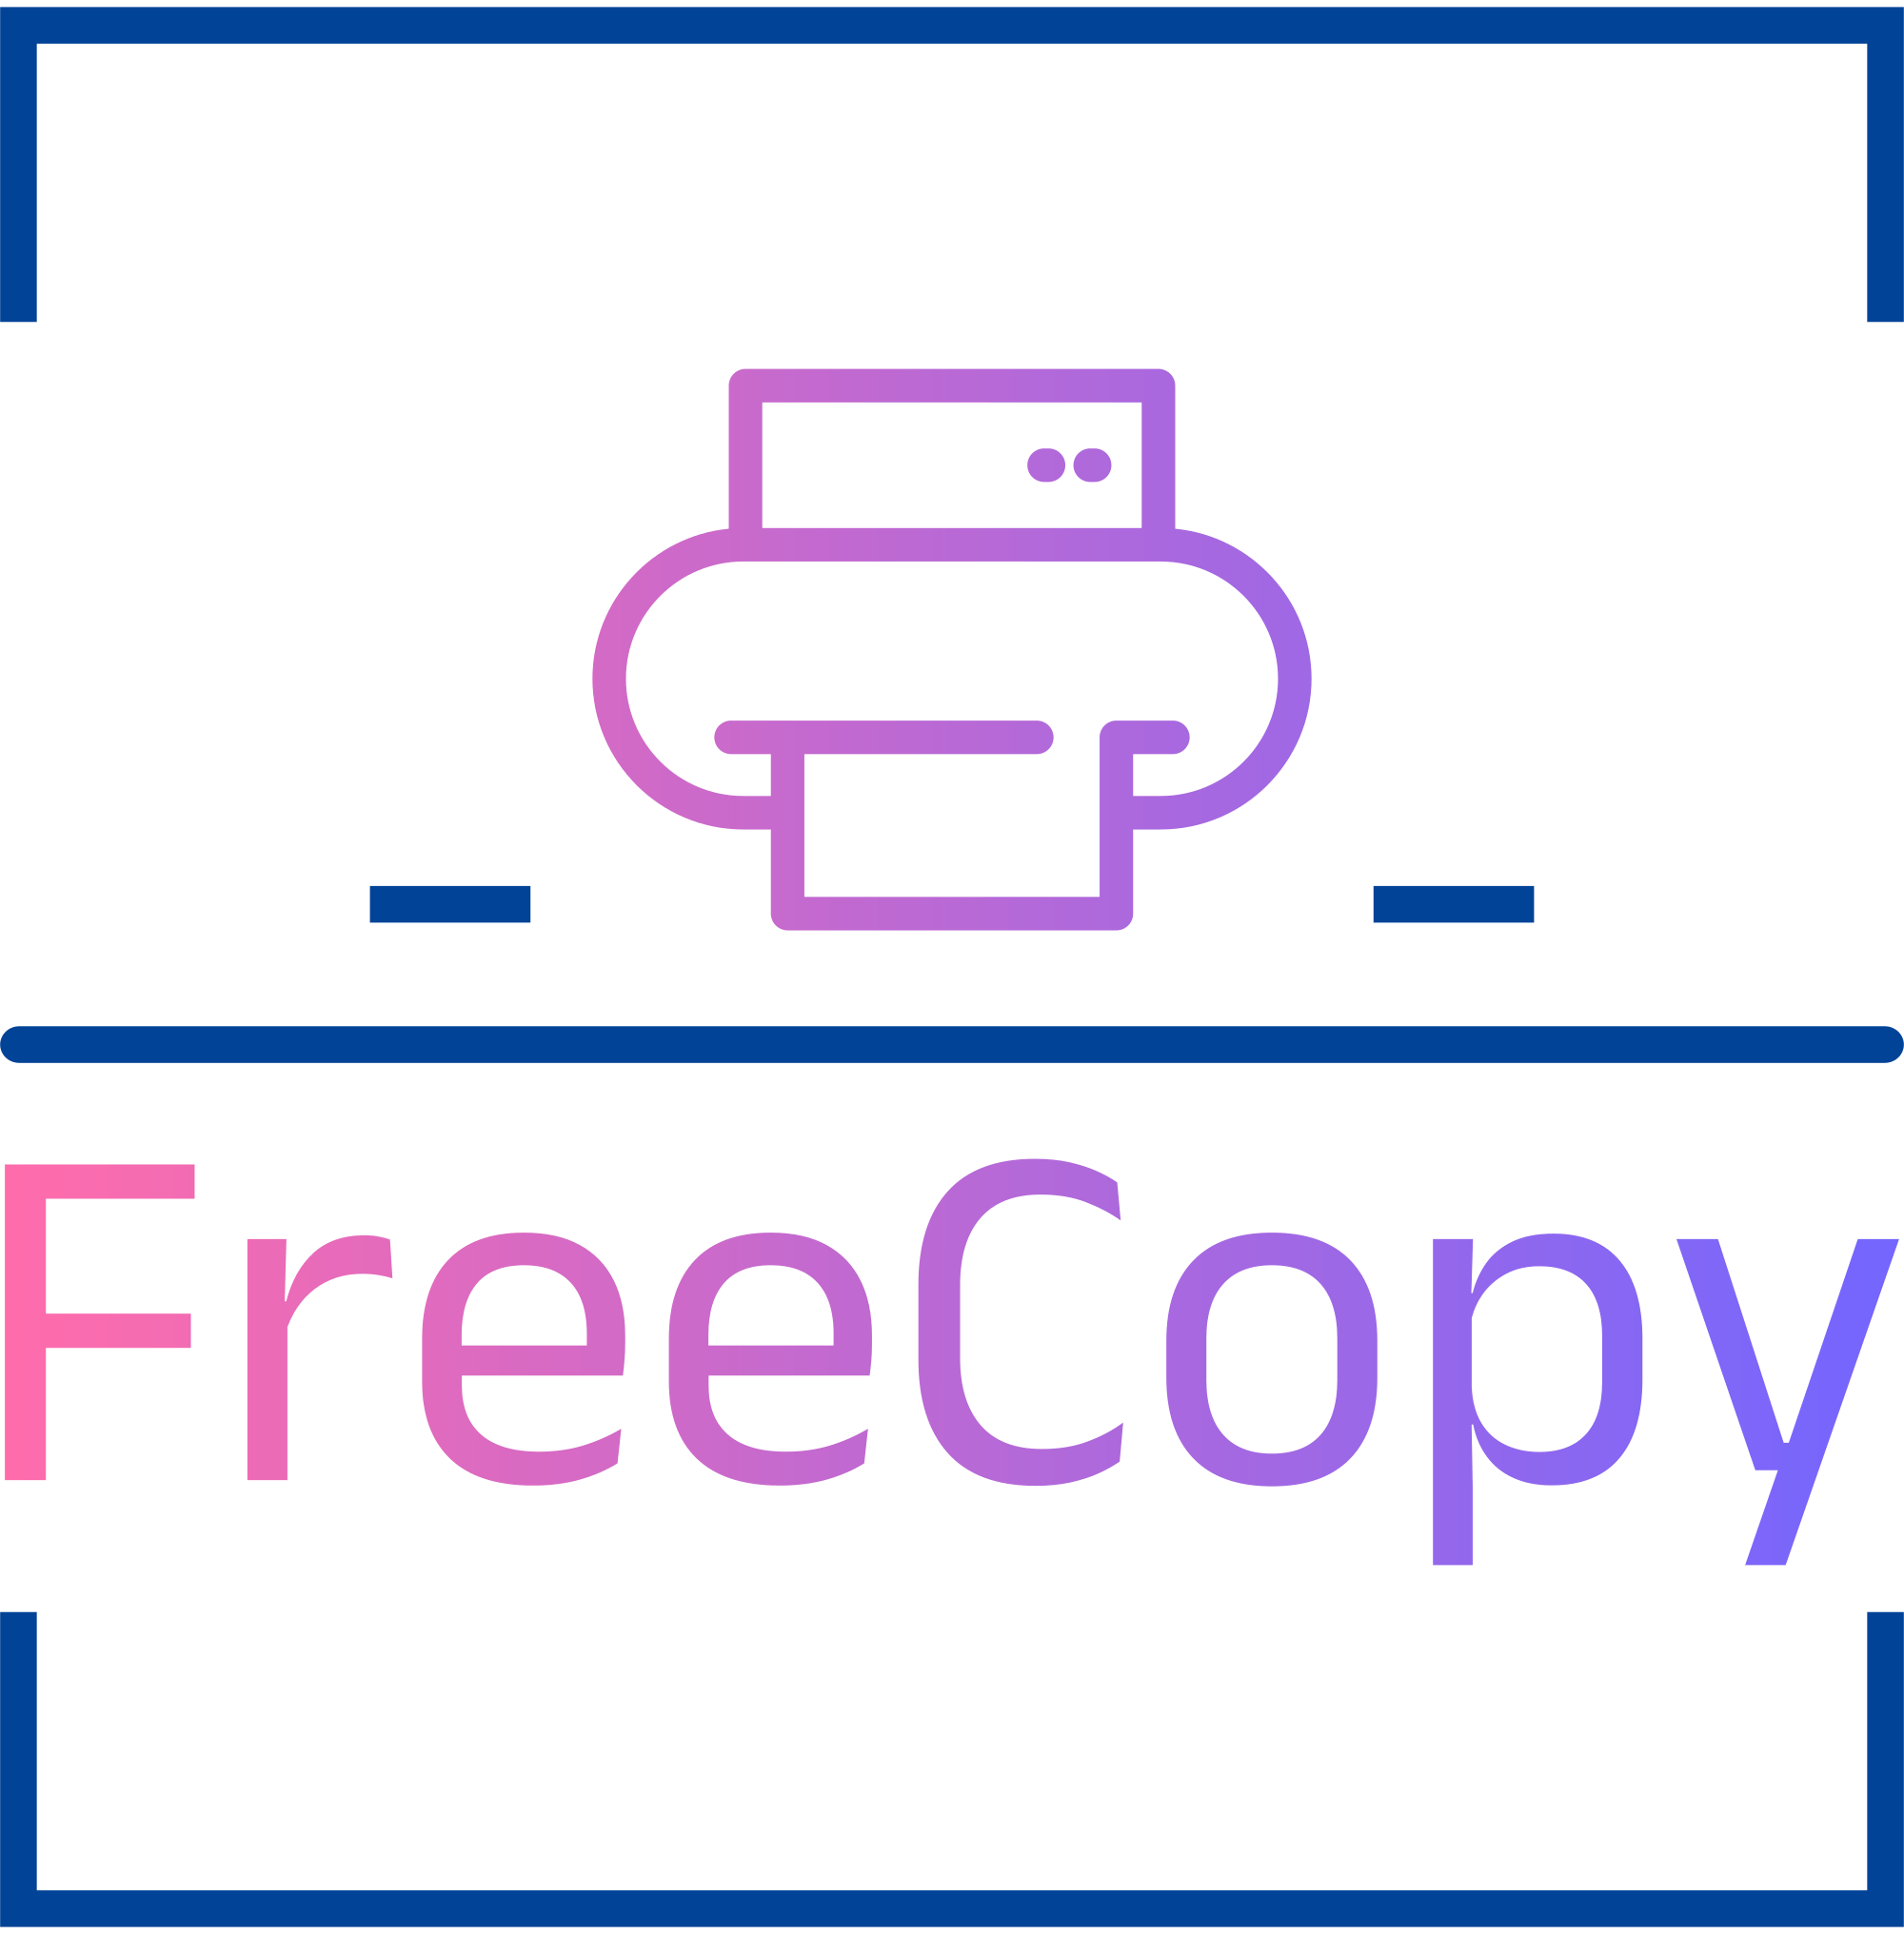 freecopy-high-resolution-logo-transparent (1)